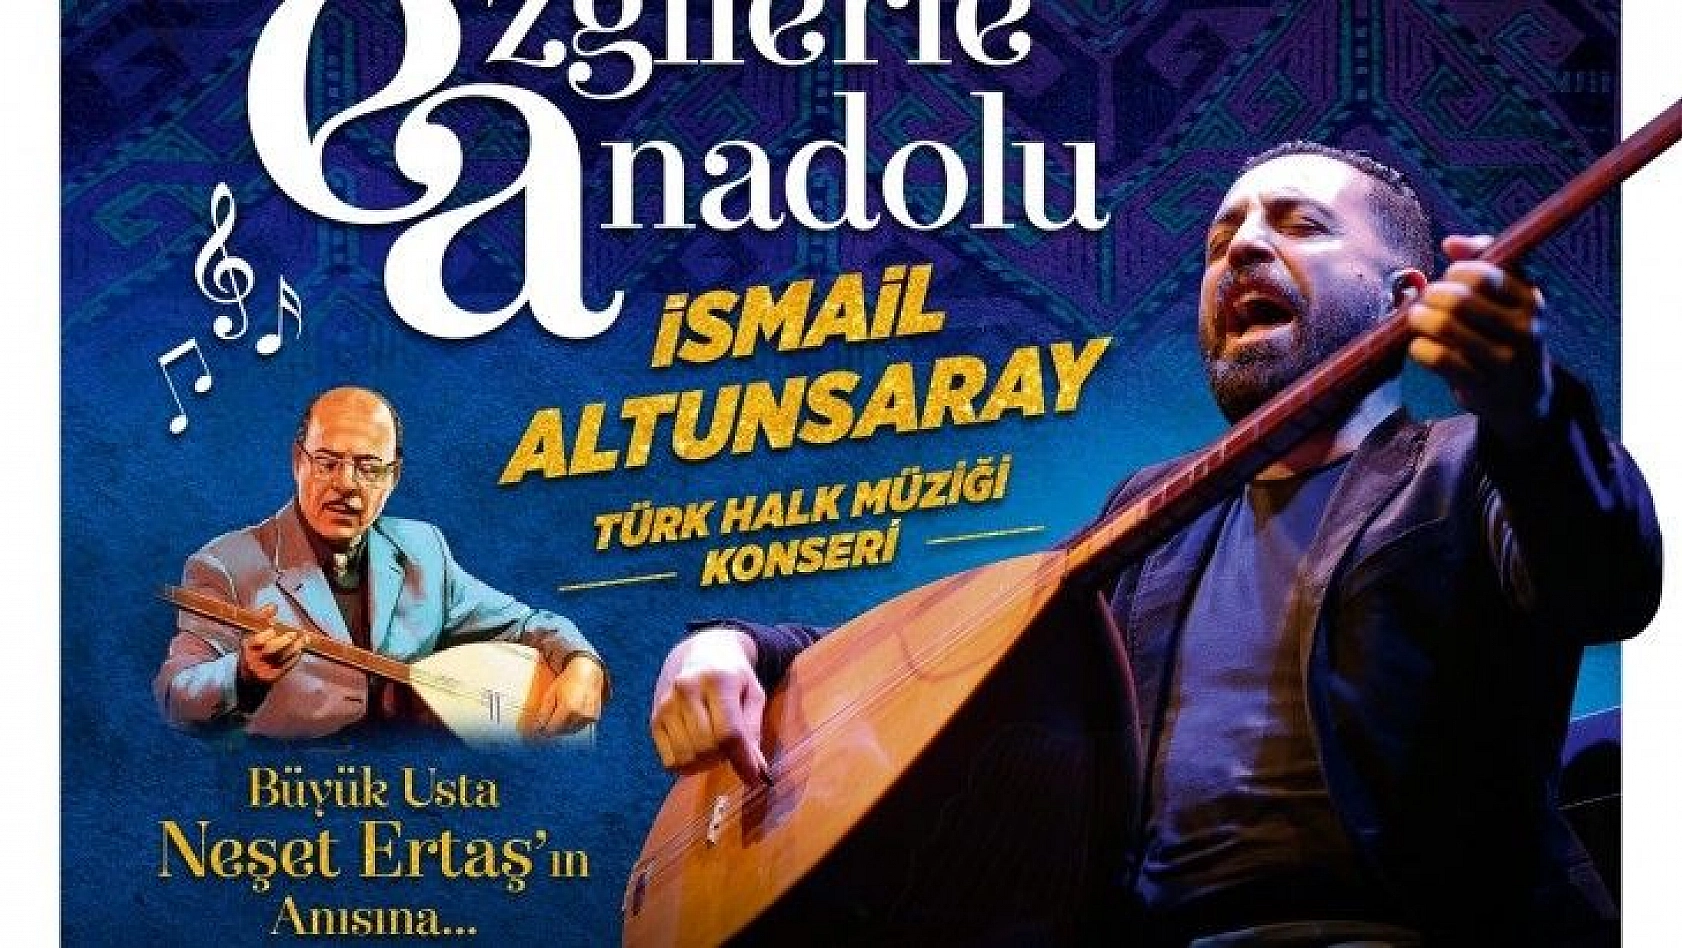 Talas'ta İsmail Altunsaray konseri